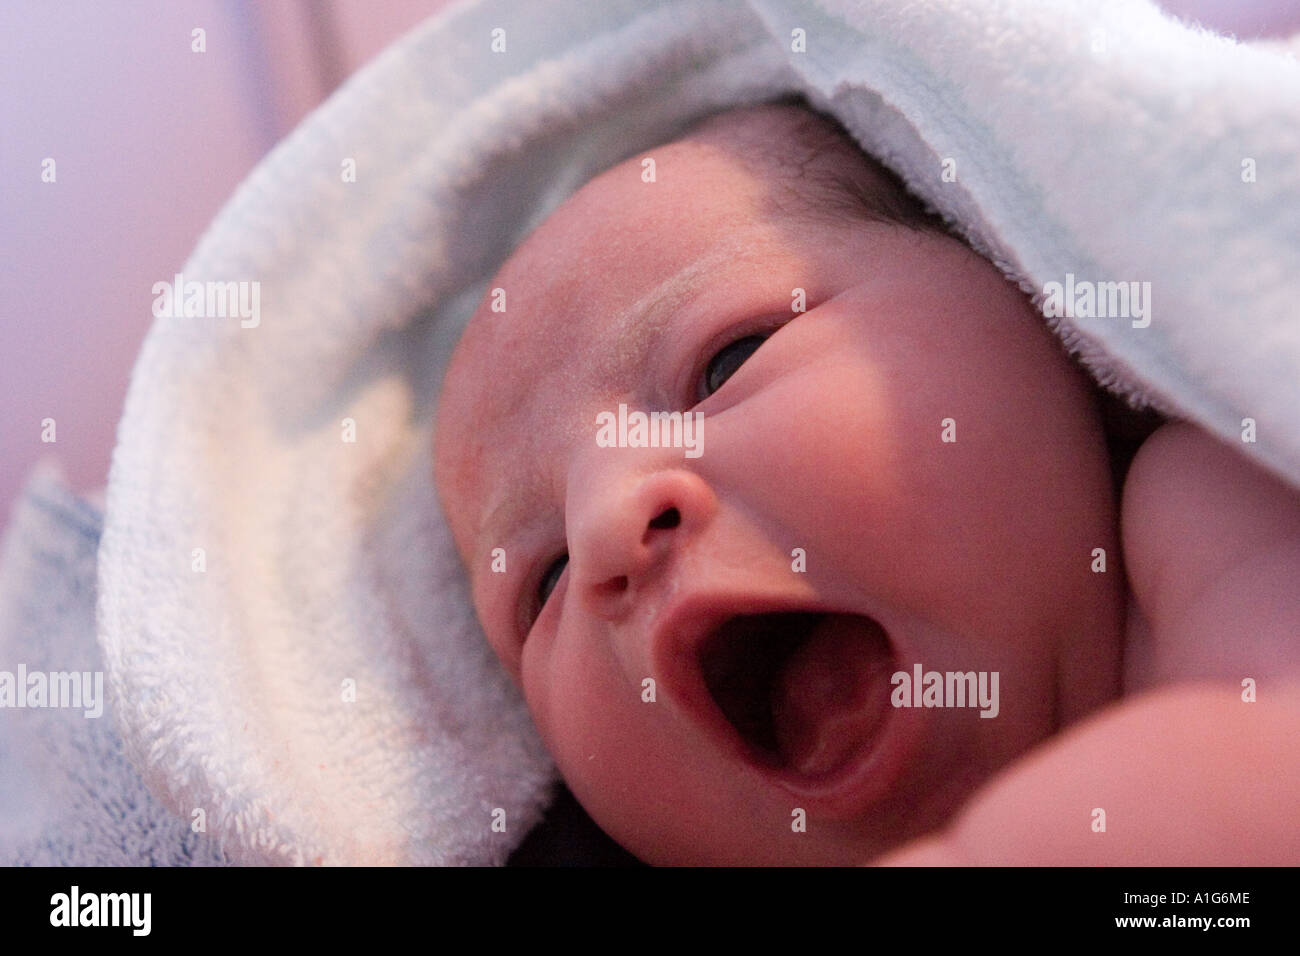 Bebé Recién Nacido En Toallas Imagen de archivo - Imagen de hembra,  muchacho: 27662091